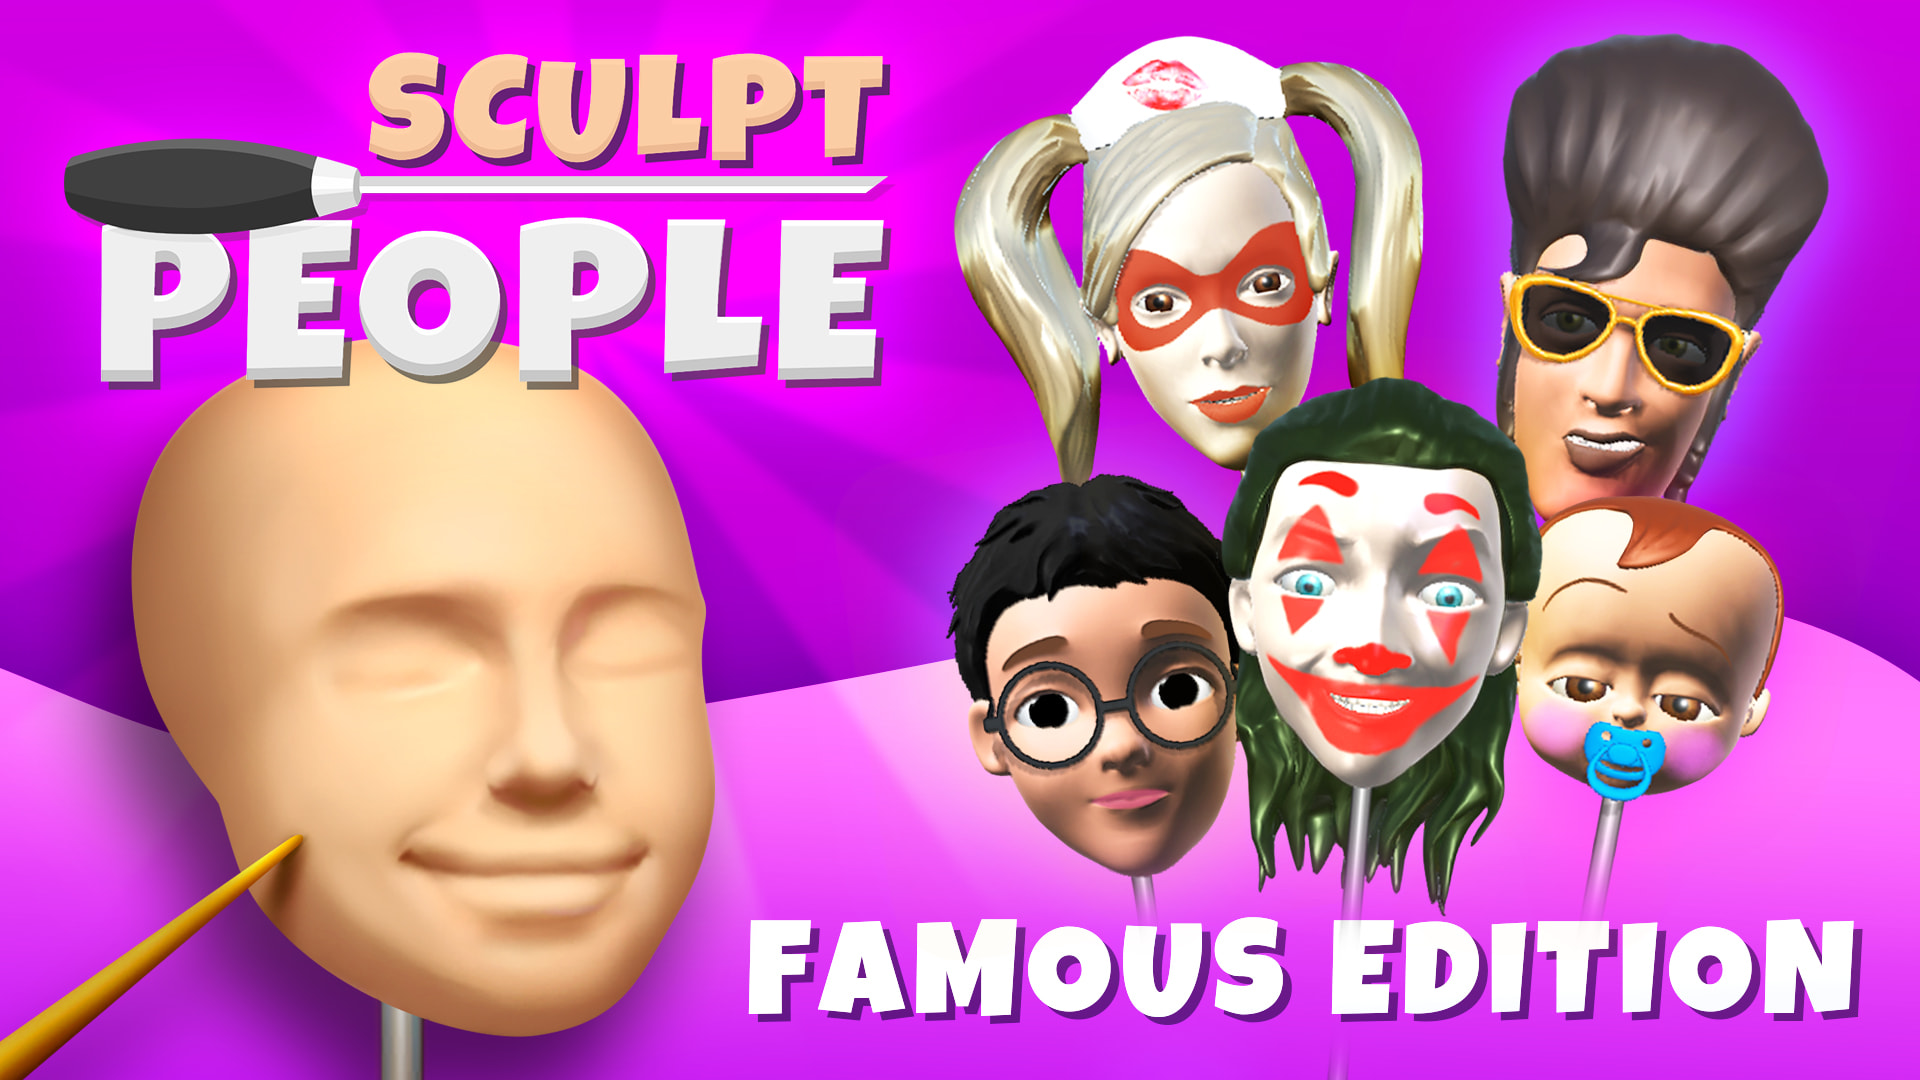 Sculpt People: Famous Edition